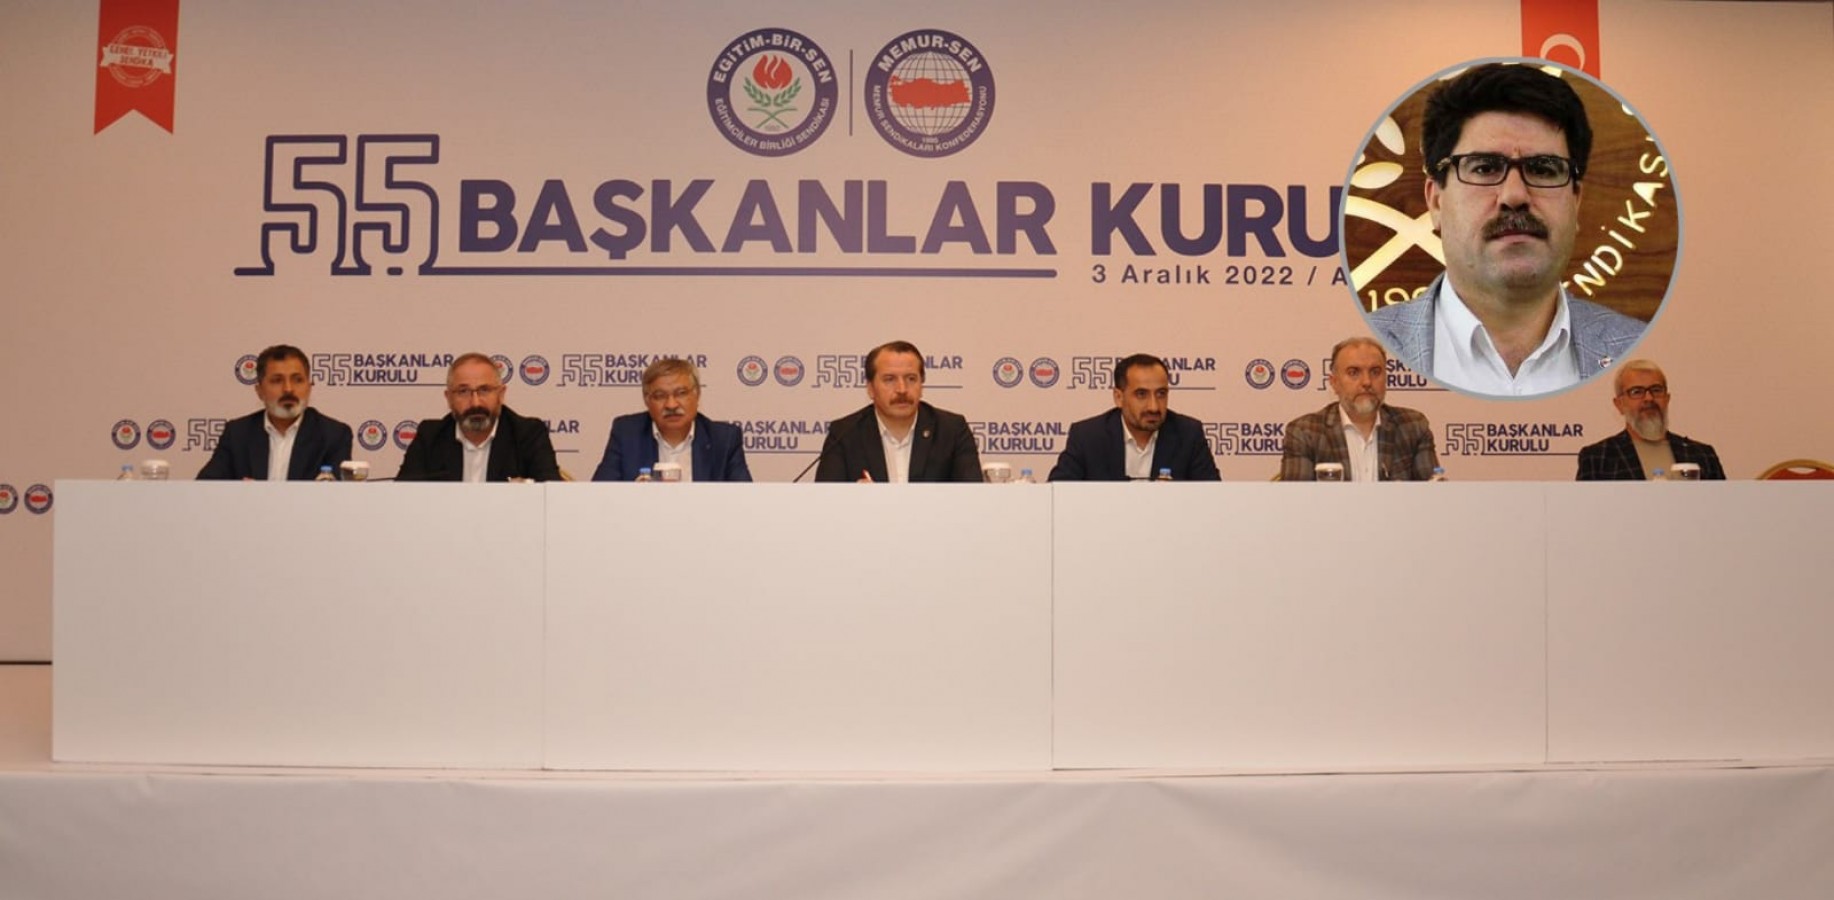 Eğitim sendikasının kurul toplantısı Antalya’da yapıldı